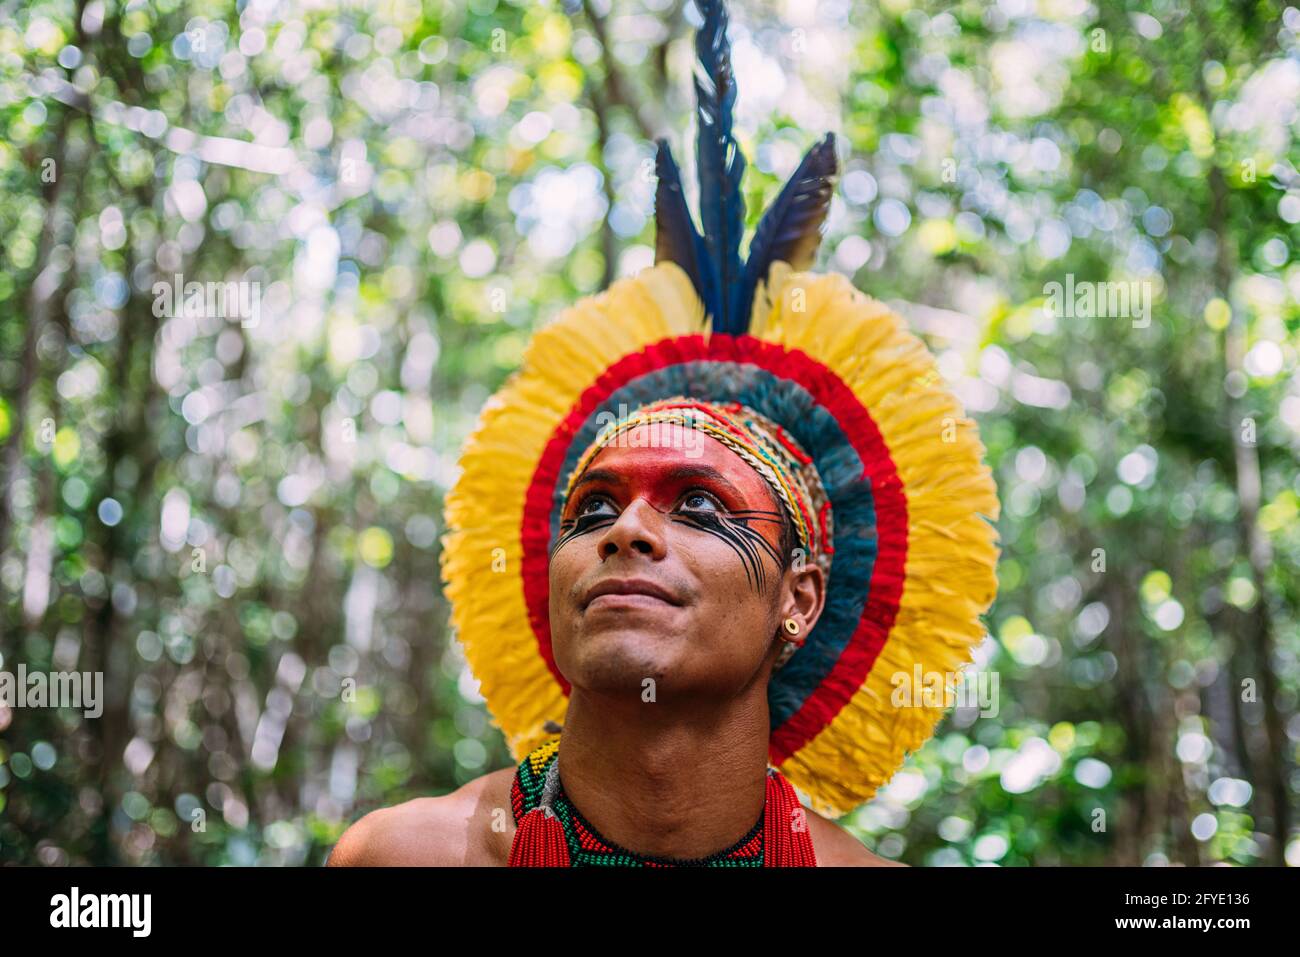 Indianer aus dem Stamm der Pataxó, mit Federkopfschmuck. Junger  brasilianischer Inder schaut nach links. Fokus auf Gesicht Stockfotografie  - Alamy